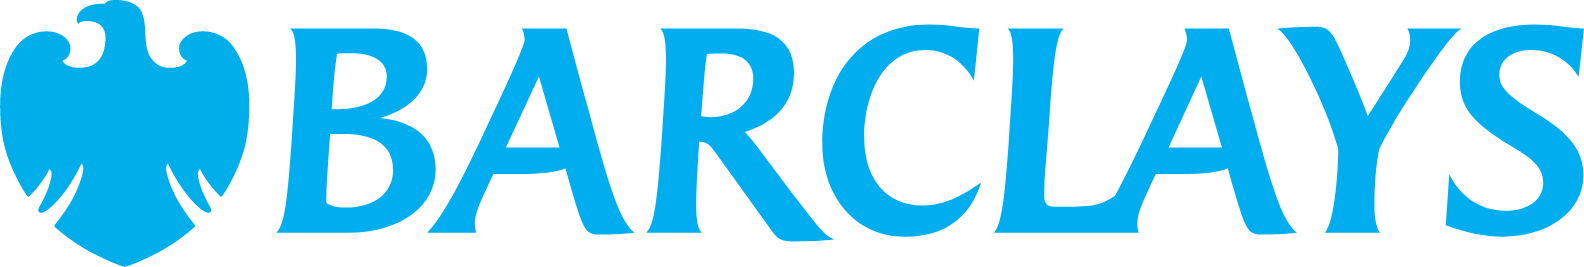 Barclays logo large (transparent PNG)